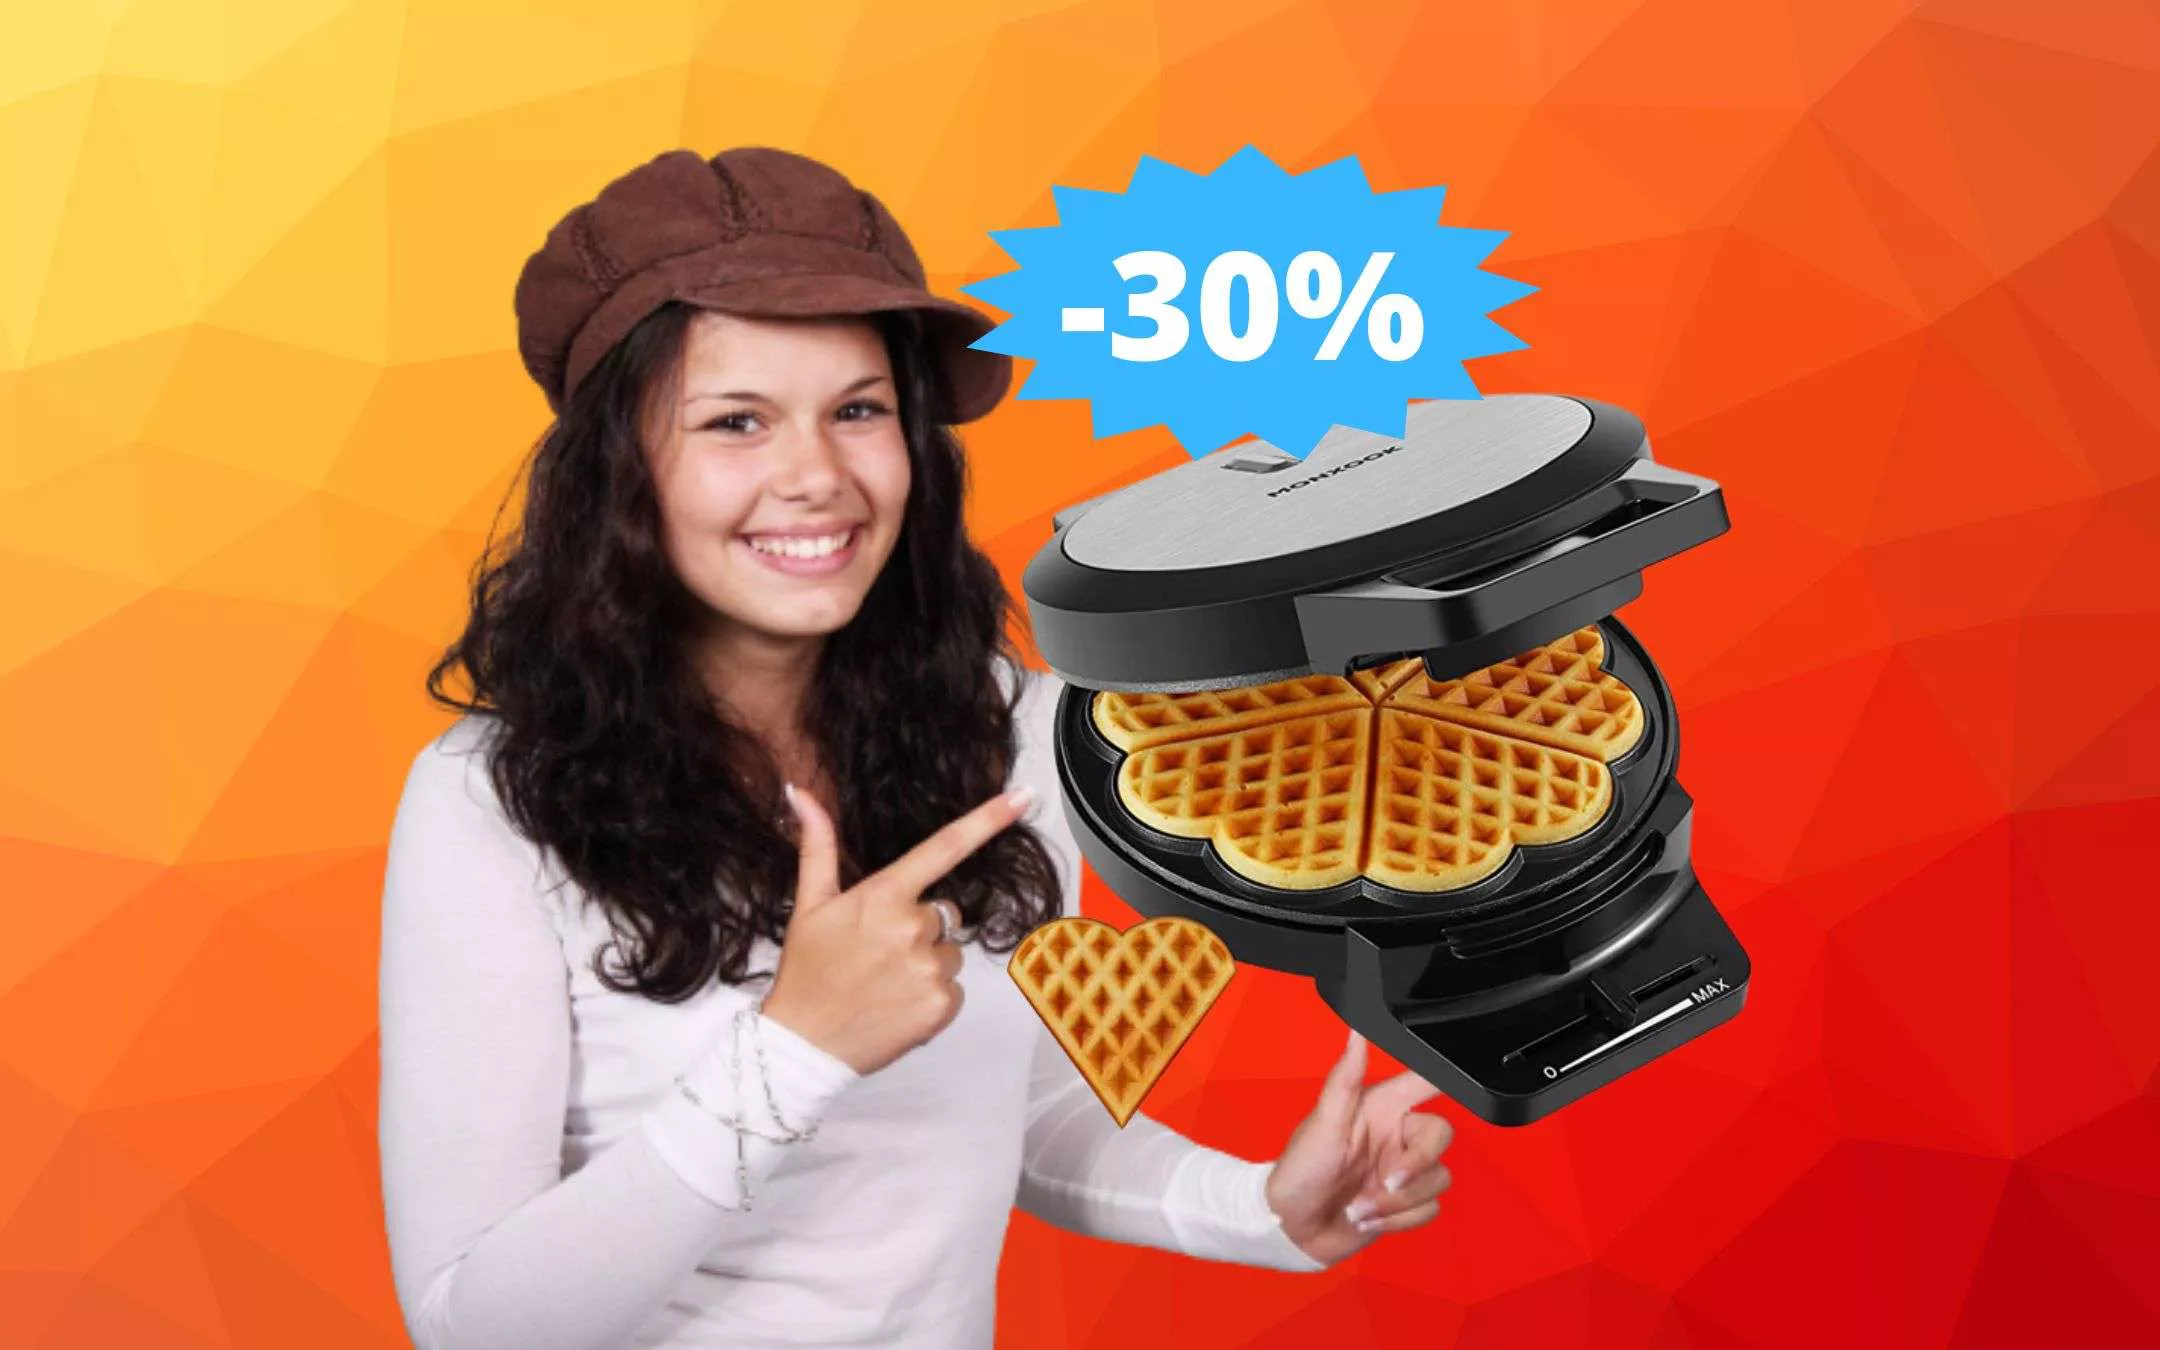 Piastra per waffle a forma di cuore: prezzo BOMBA su